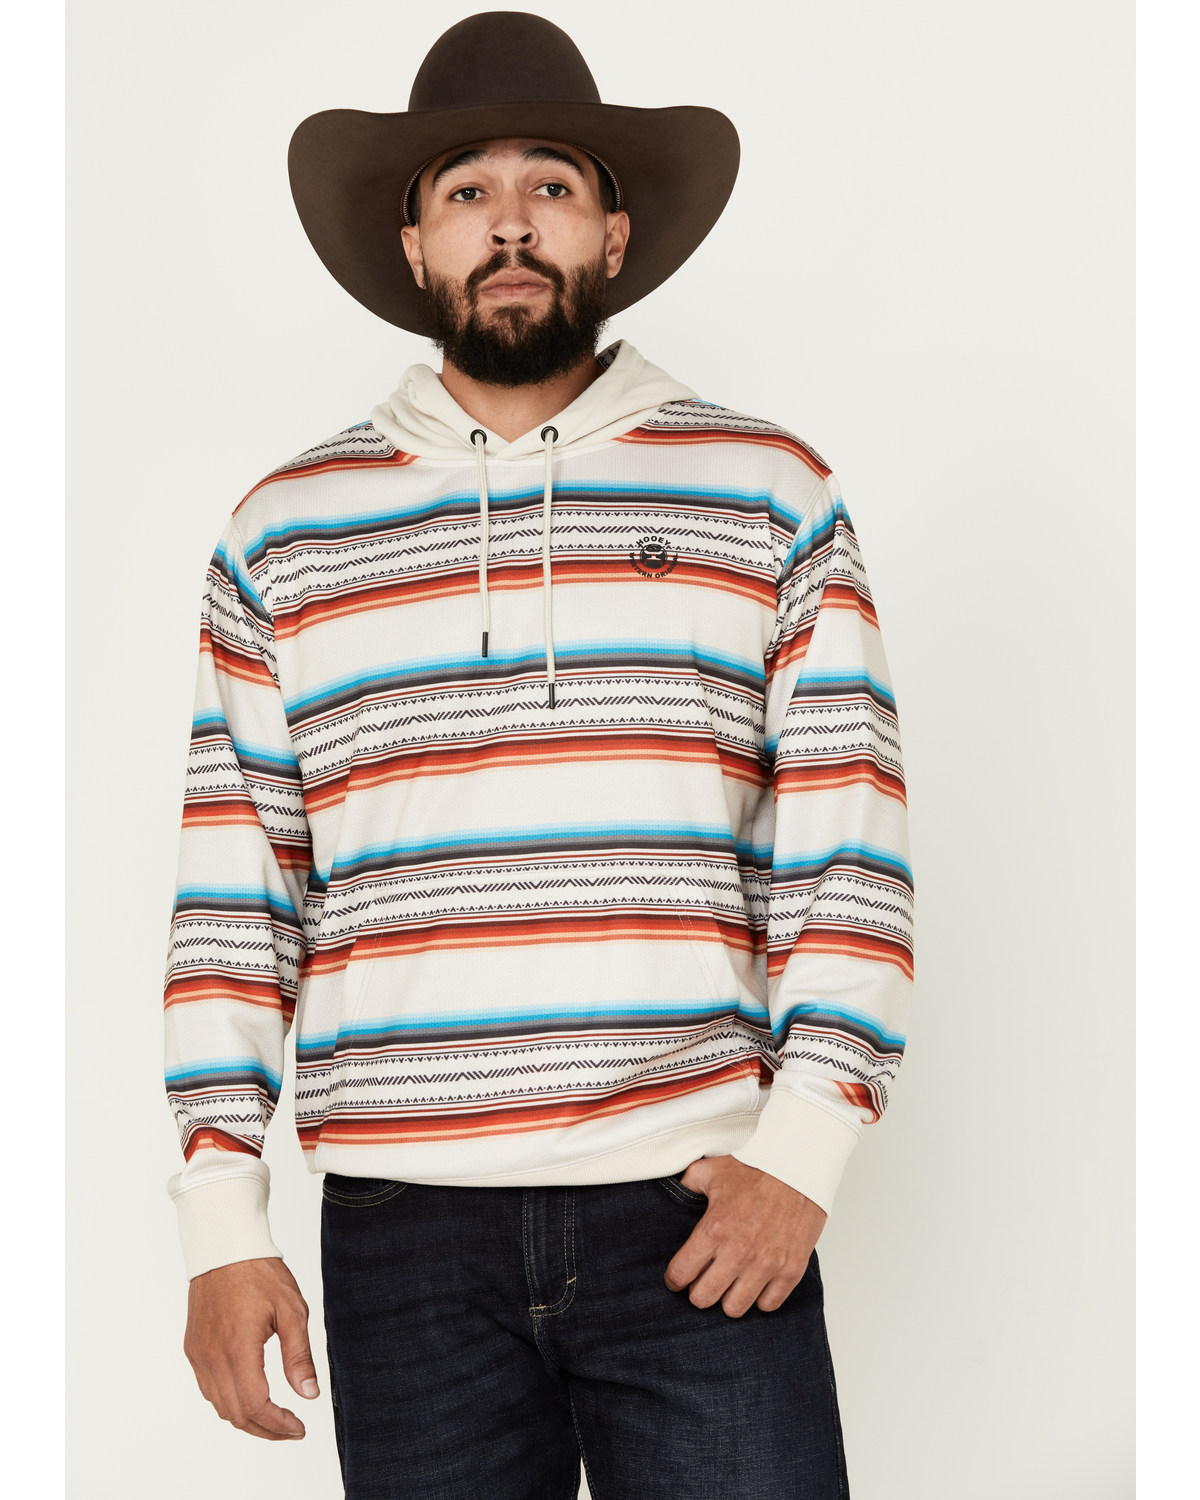 Hooey Men's Mesa Serape Striped Hooded Sweatshirt